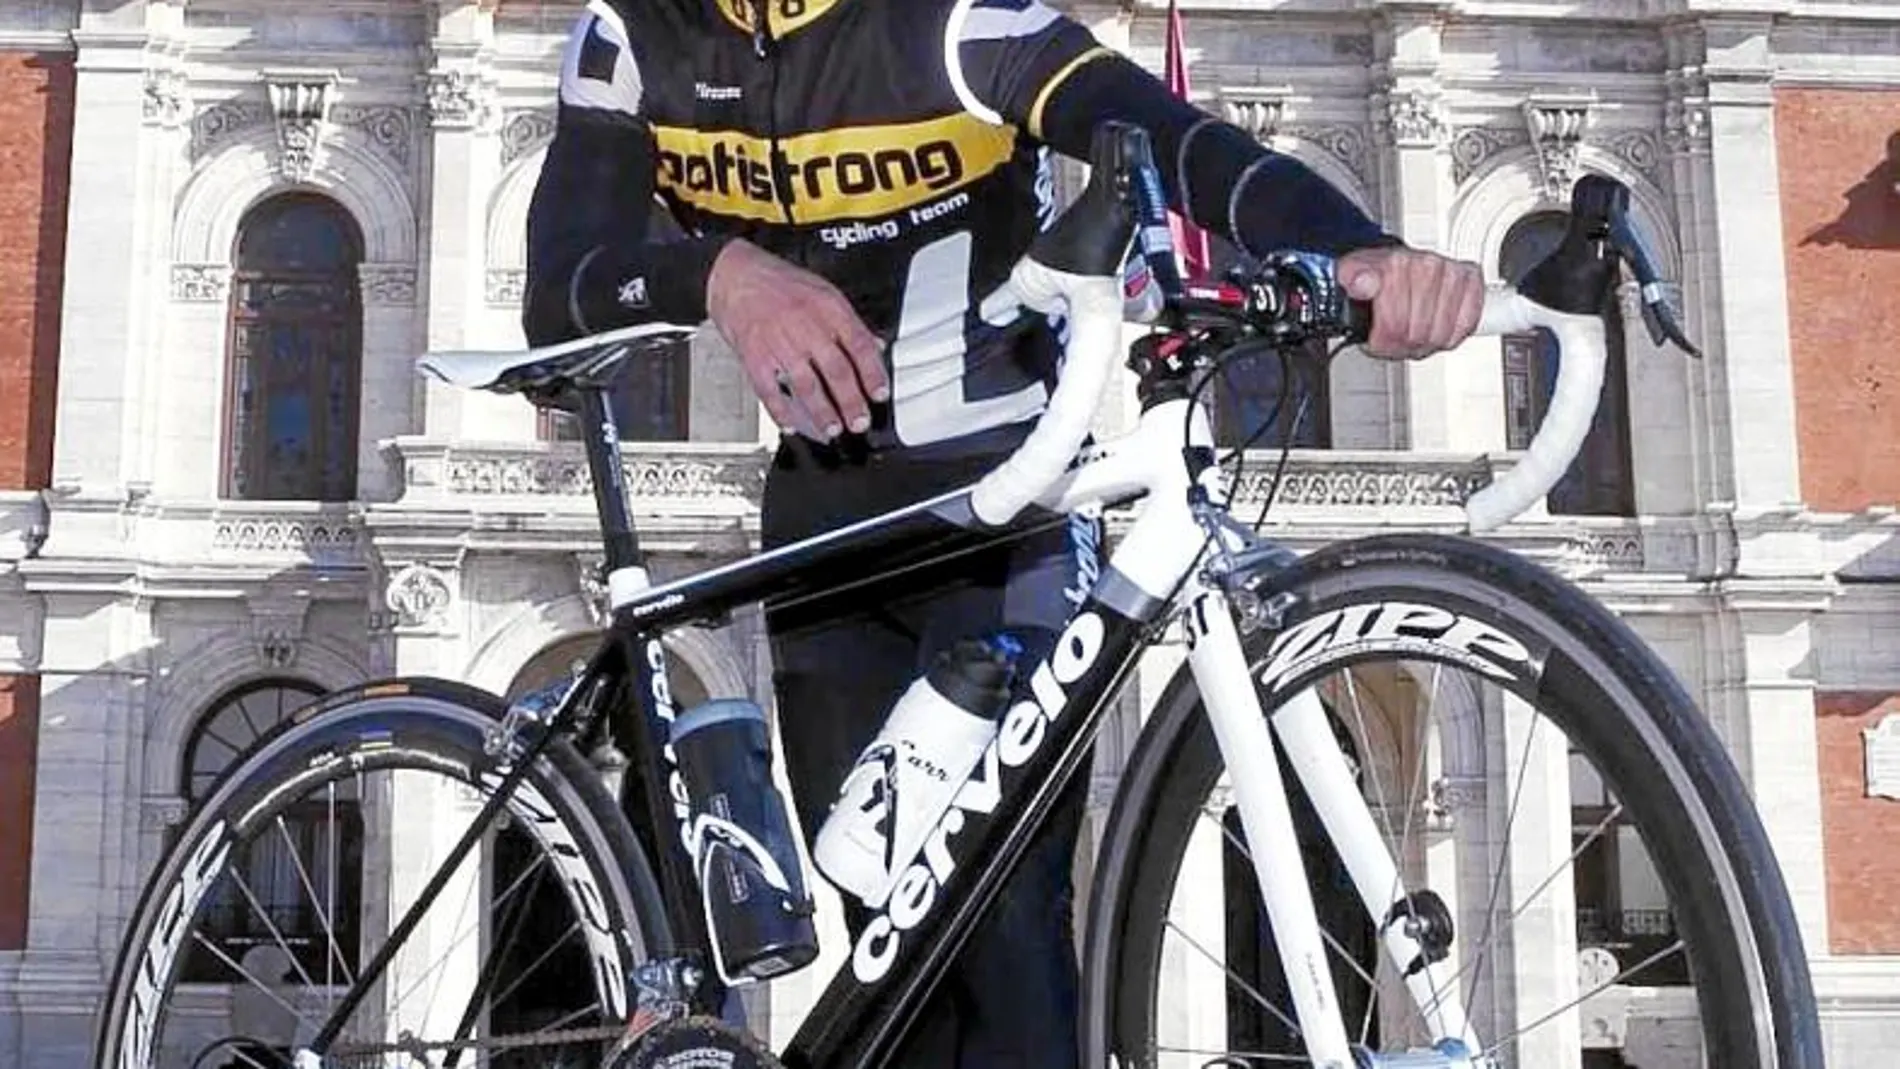 Ismael Alonso, vallisoletano de 38 años, periodista y ciclista aficionado